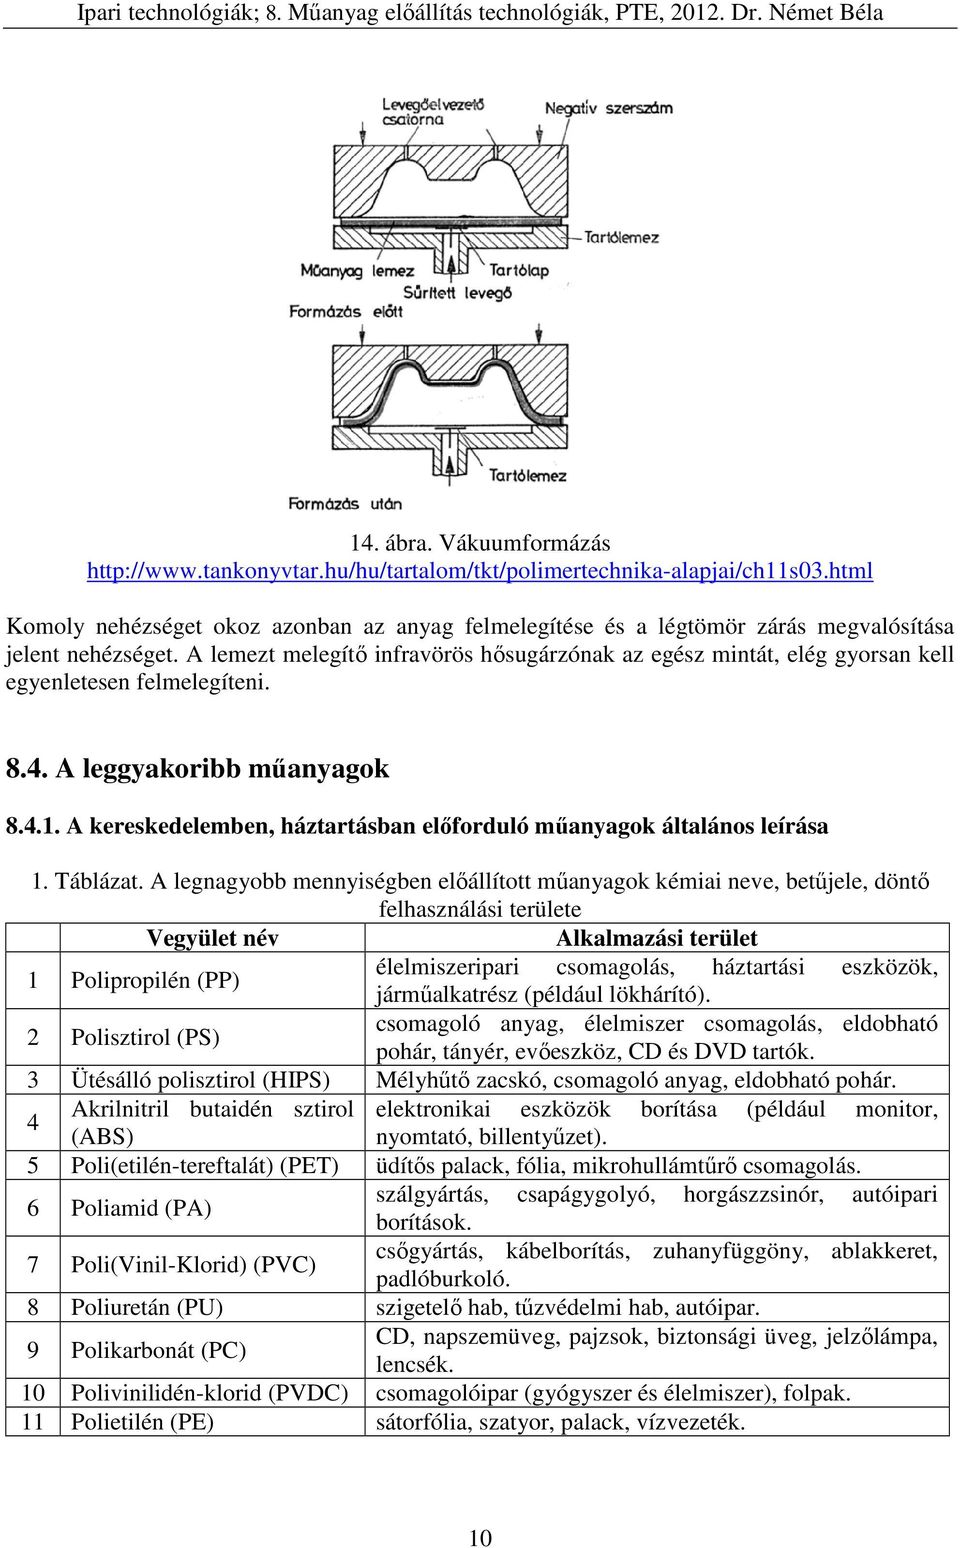 8. Műanyag előállítási technológiák. - PDF Ingyenes letöltés